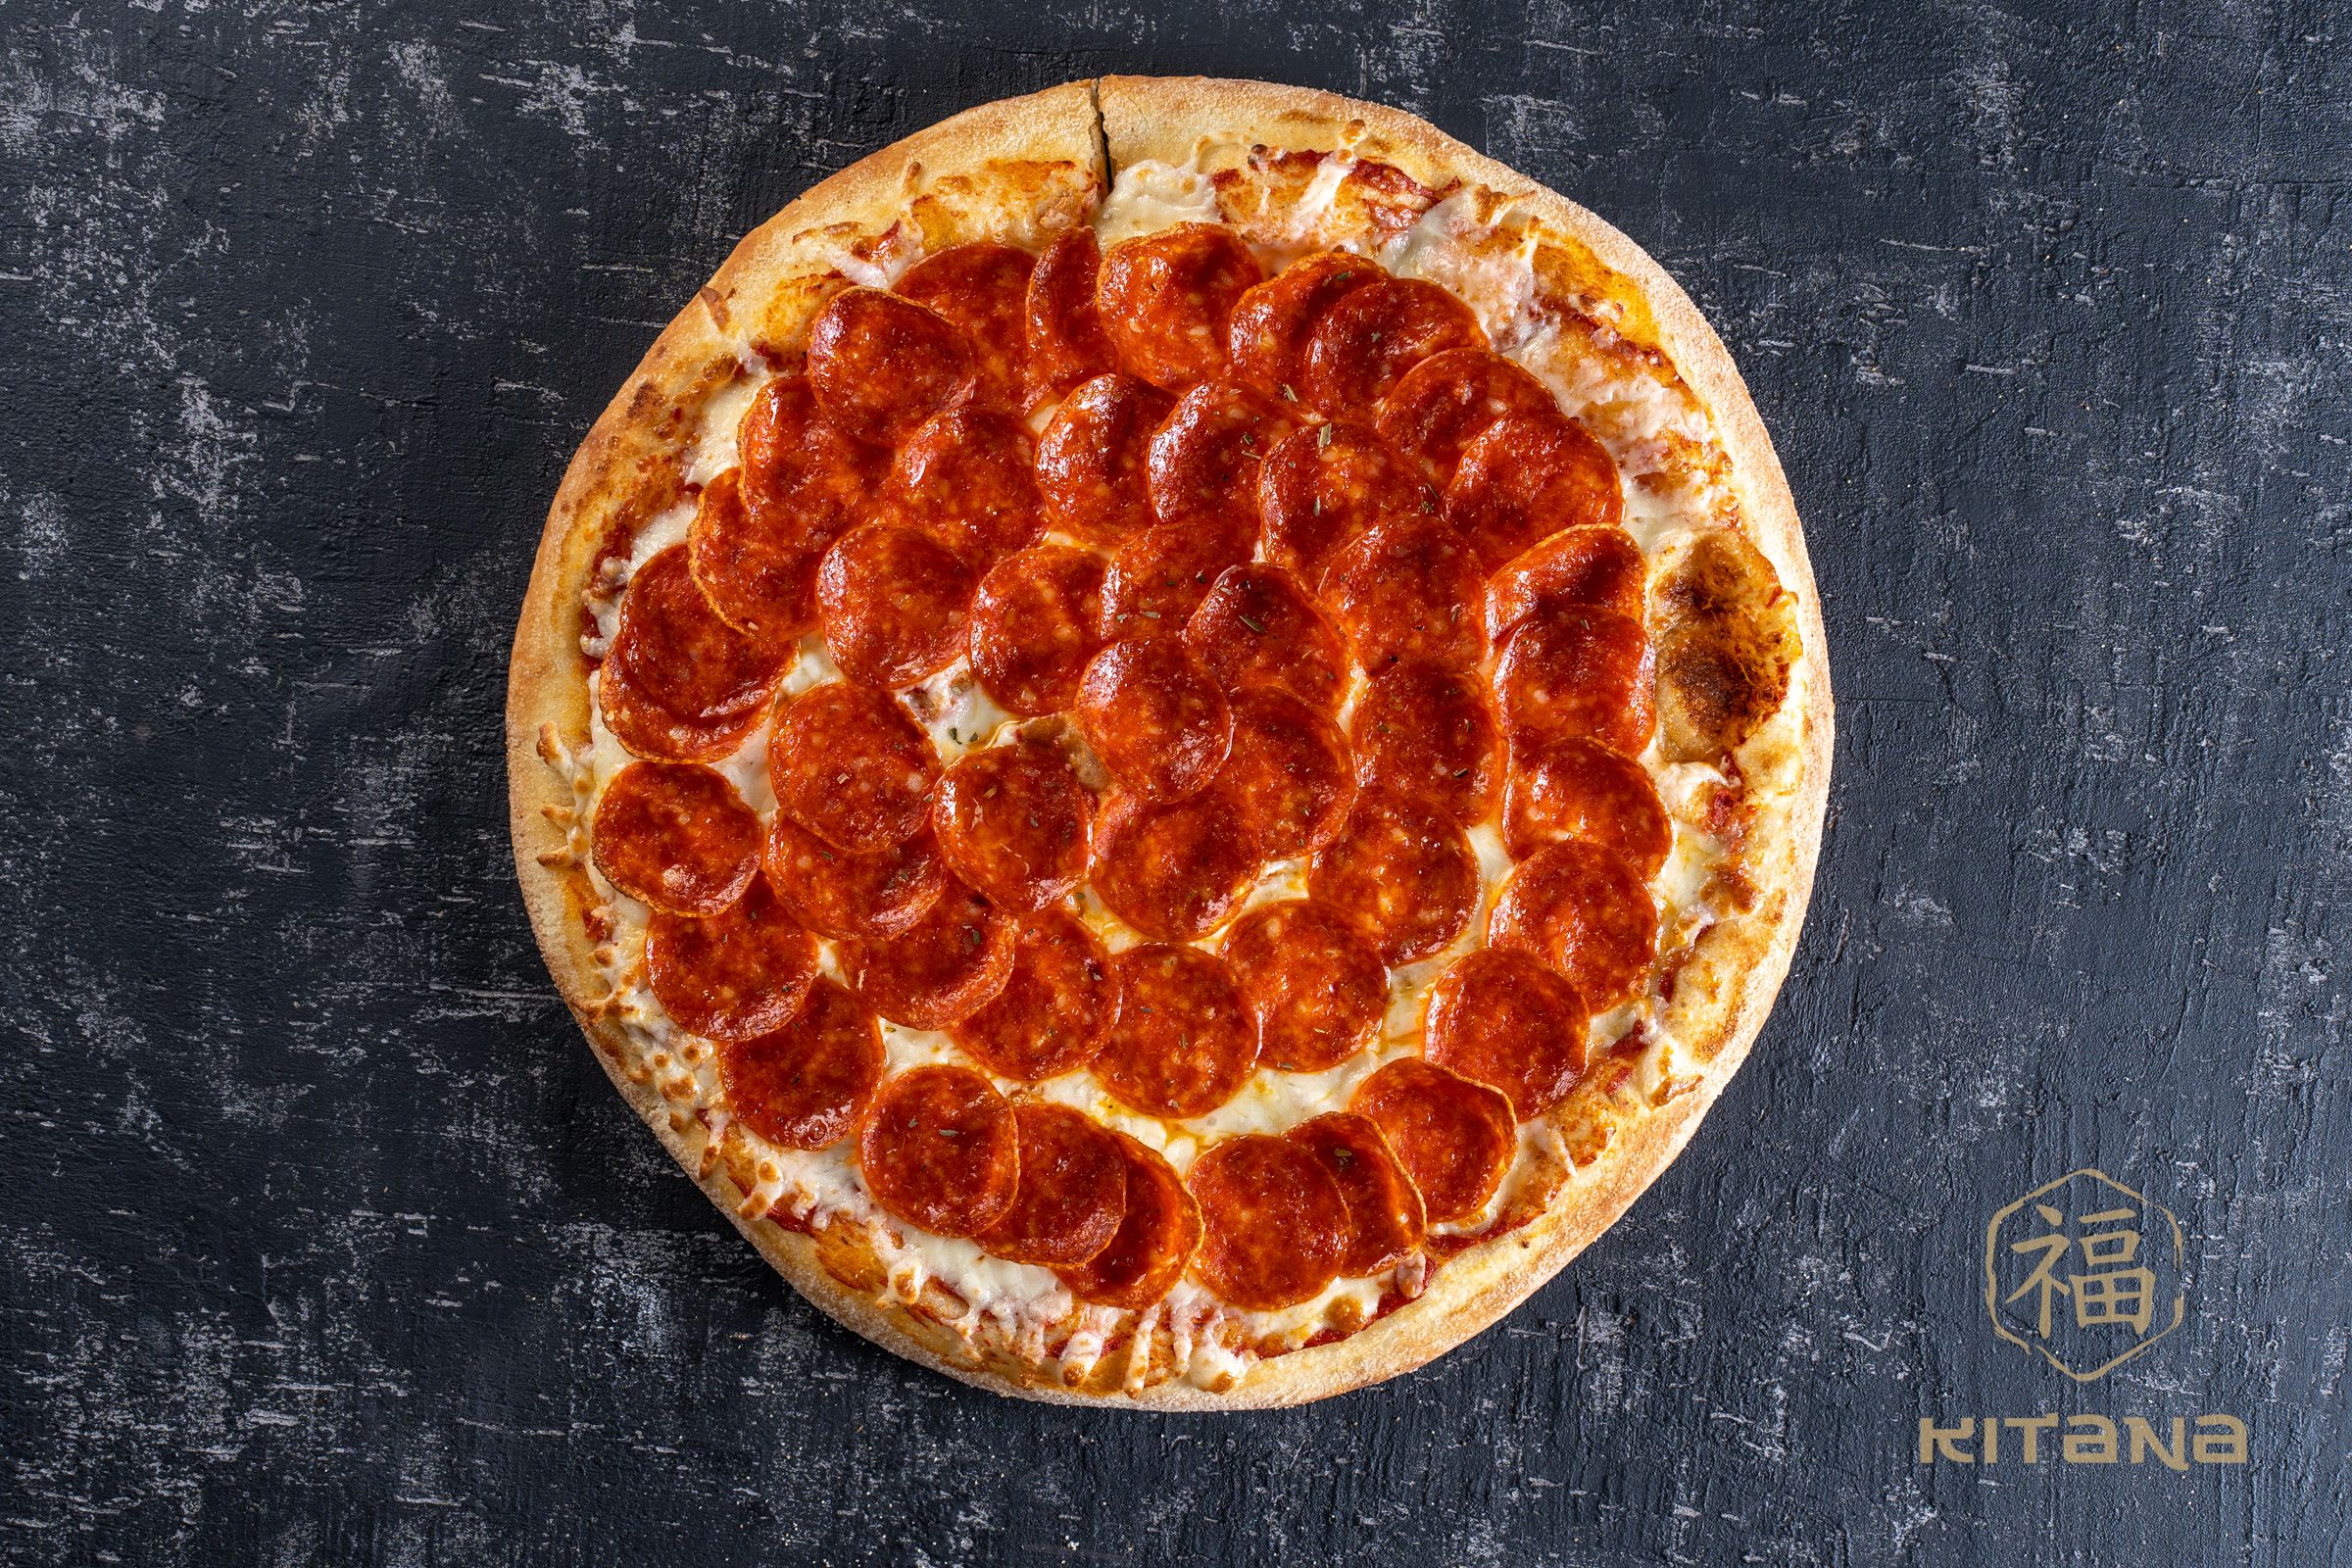 сколько калорий в одном куске пиццы пепперони додо фото 78